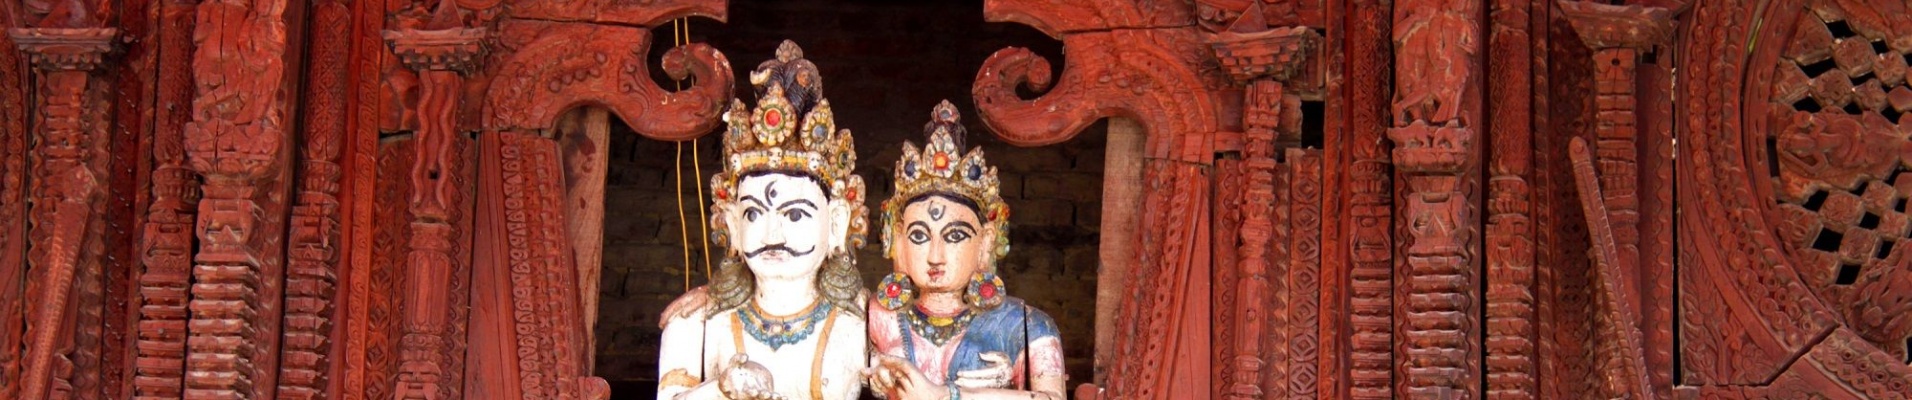 Shiva et Parvati, Katmandou,Népal